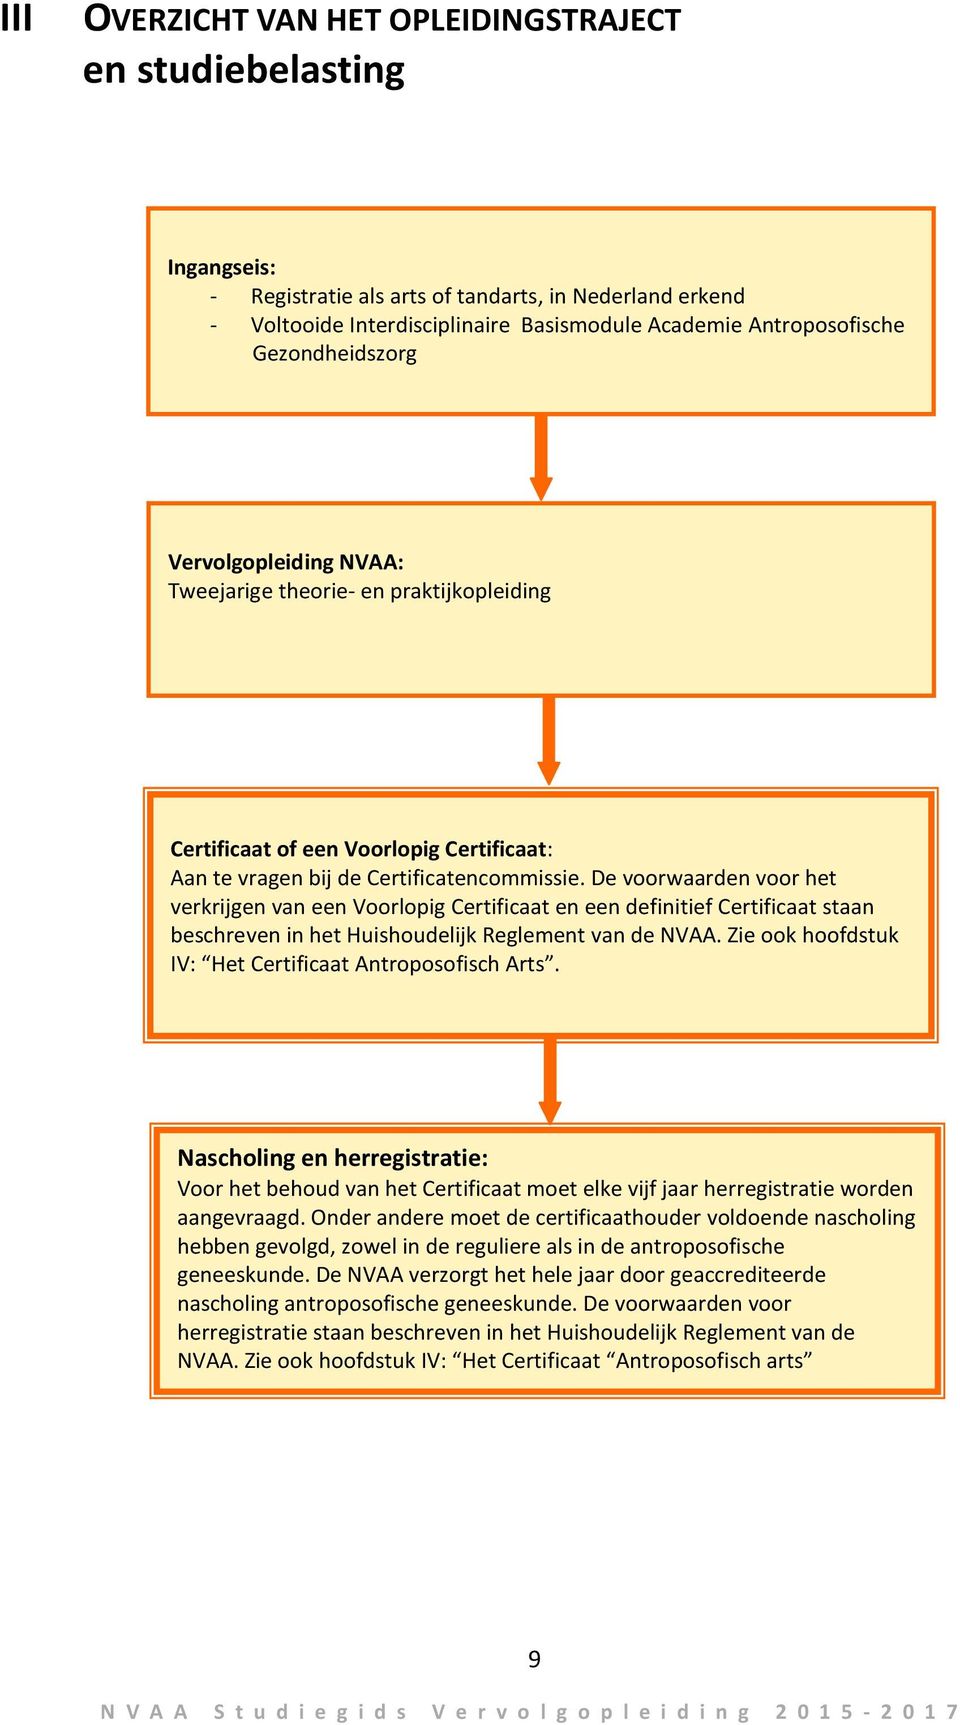 De voorwaarden voor het verkrijgen van een Voorlopig Certificaat en een definitief Certificaat staan beschreven in het Huishoudelijk Reglement van de NVAA.